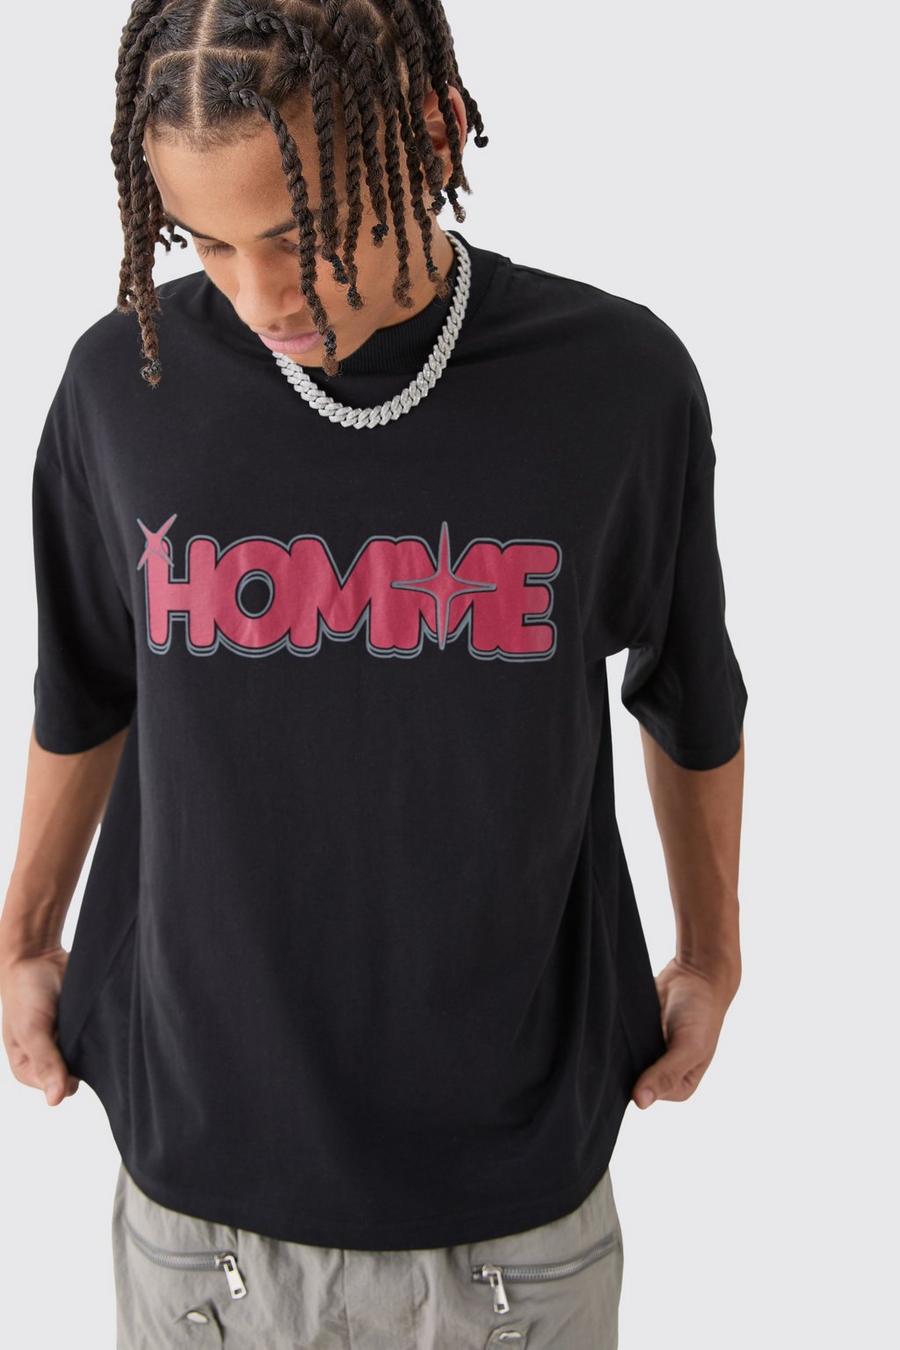 Camiseta oversize recta con estampado Homme de estrella, Black